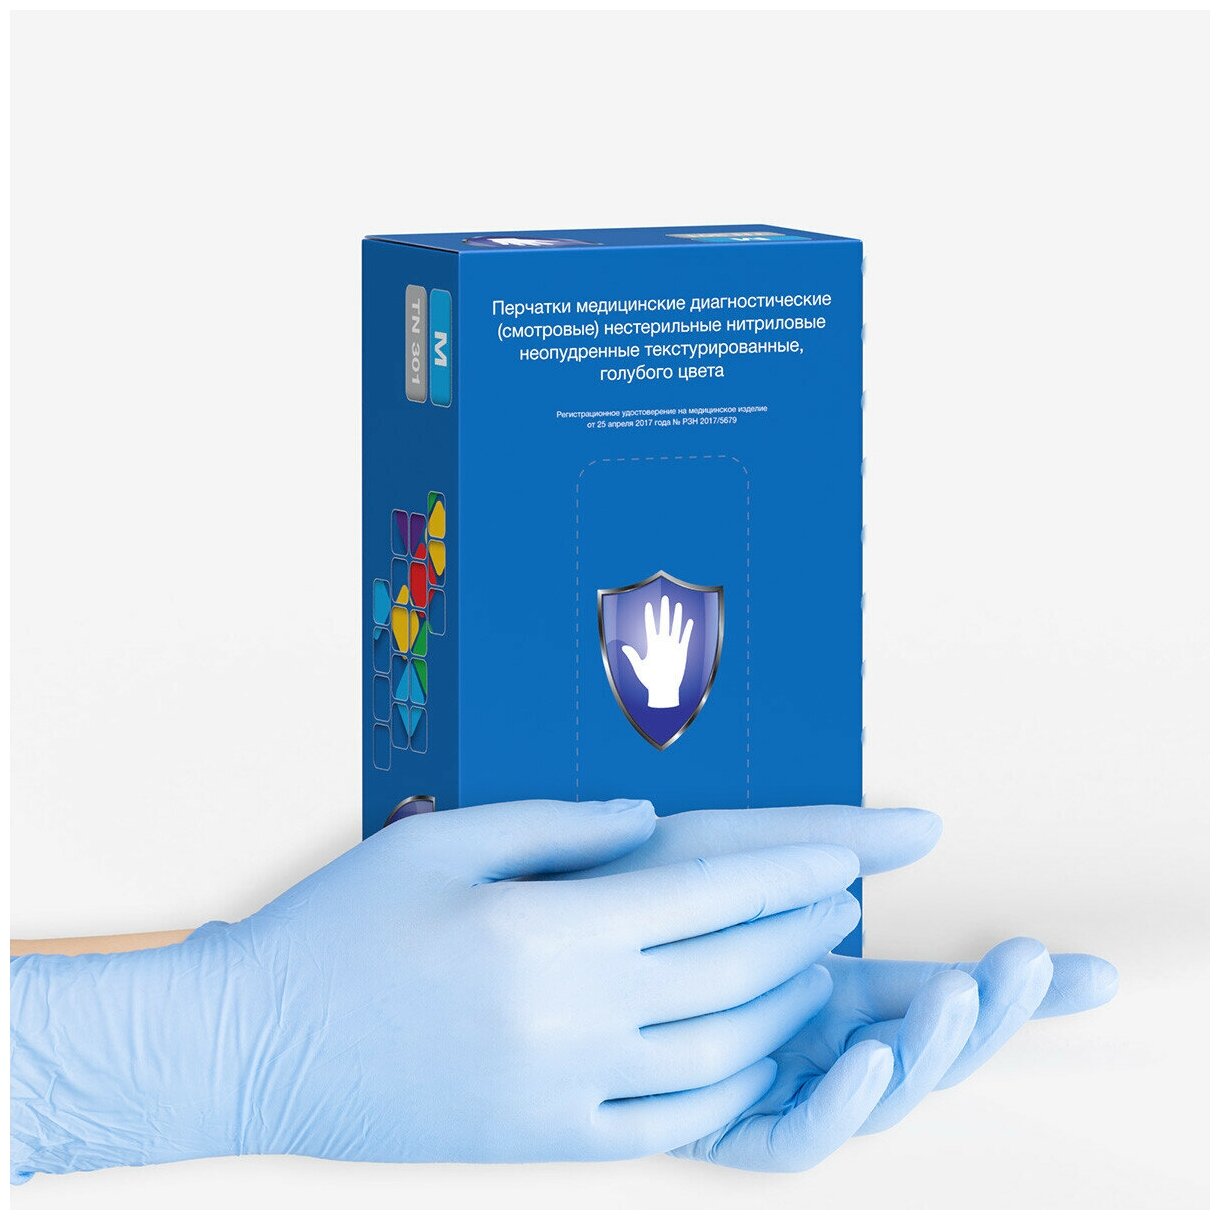 Перчатки нитриловые Safe&Care TN 301, цвет: голубой, размер S, 200 шт. (100 пар)